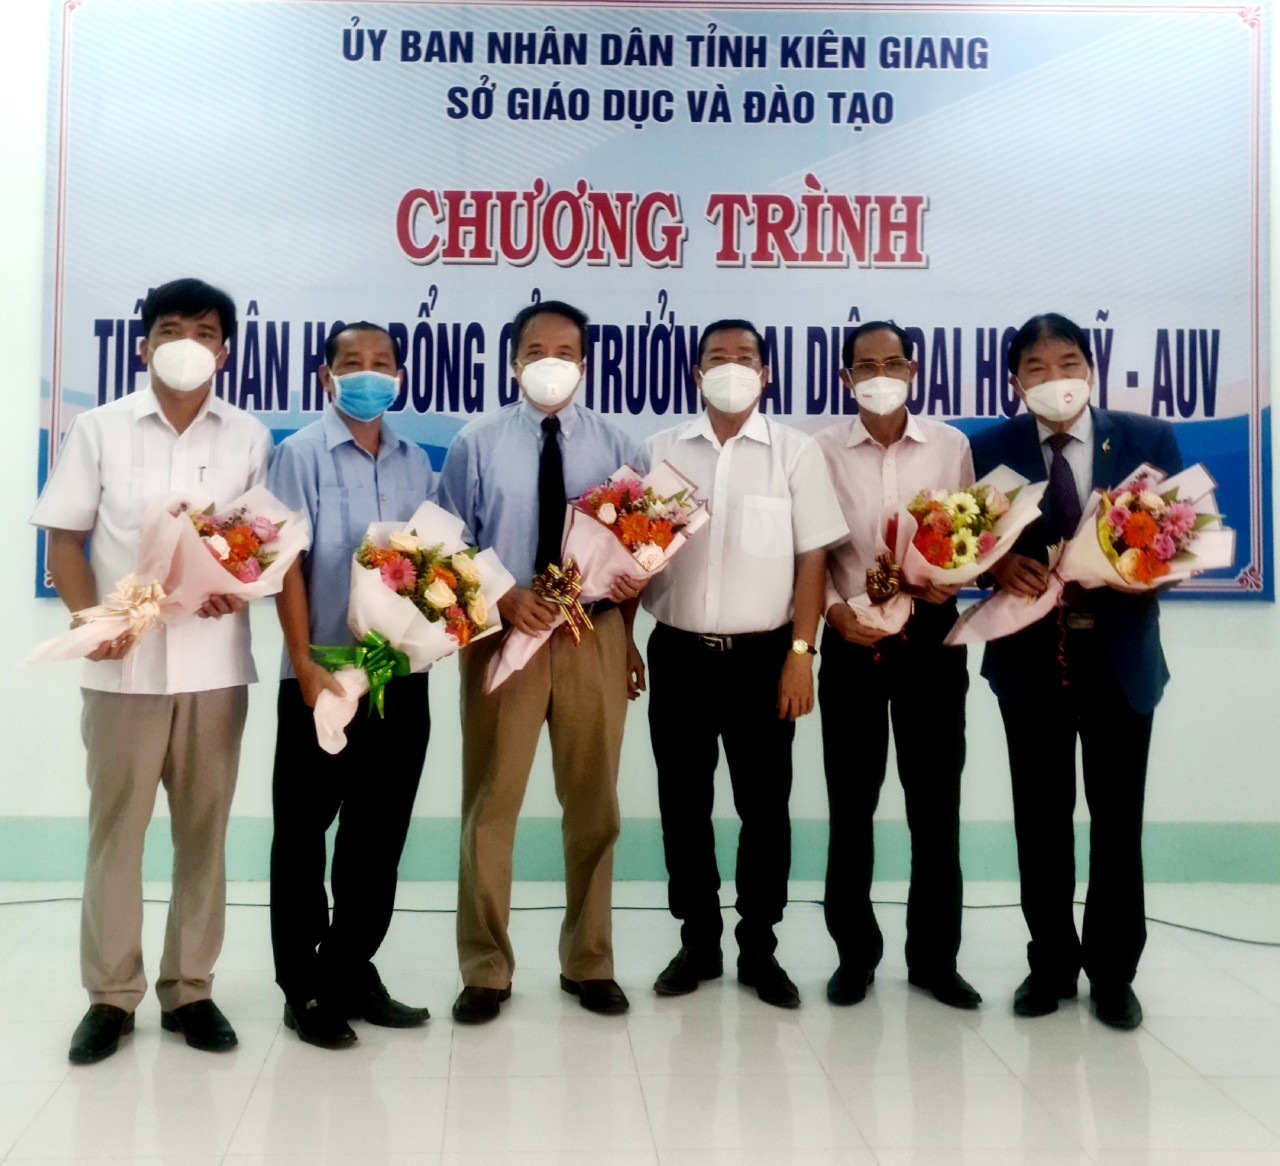 Trao tặng 41 suất học bổng du học Mỹ cho học sinh THPT tỉnh Kiên Giang